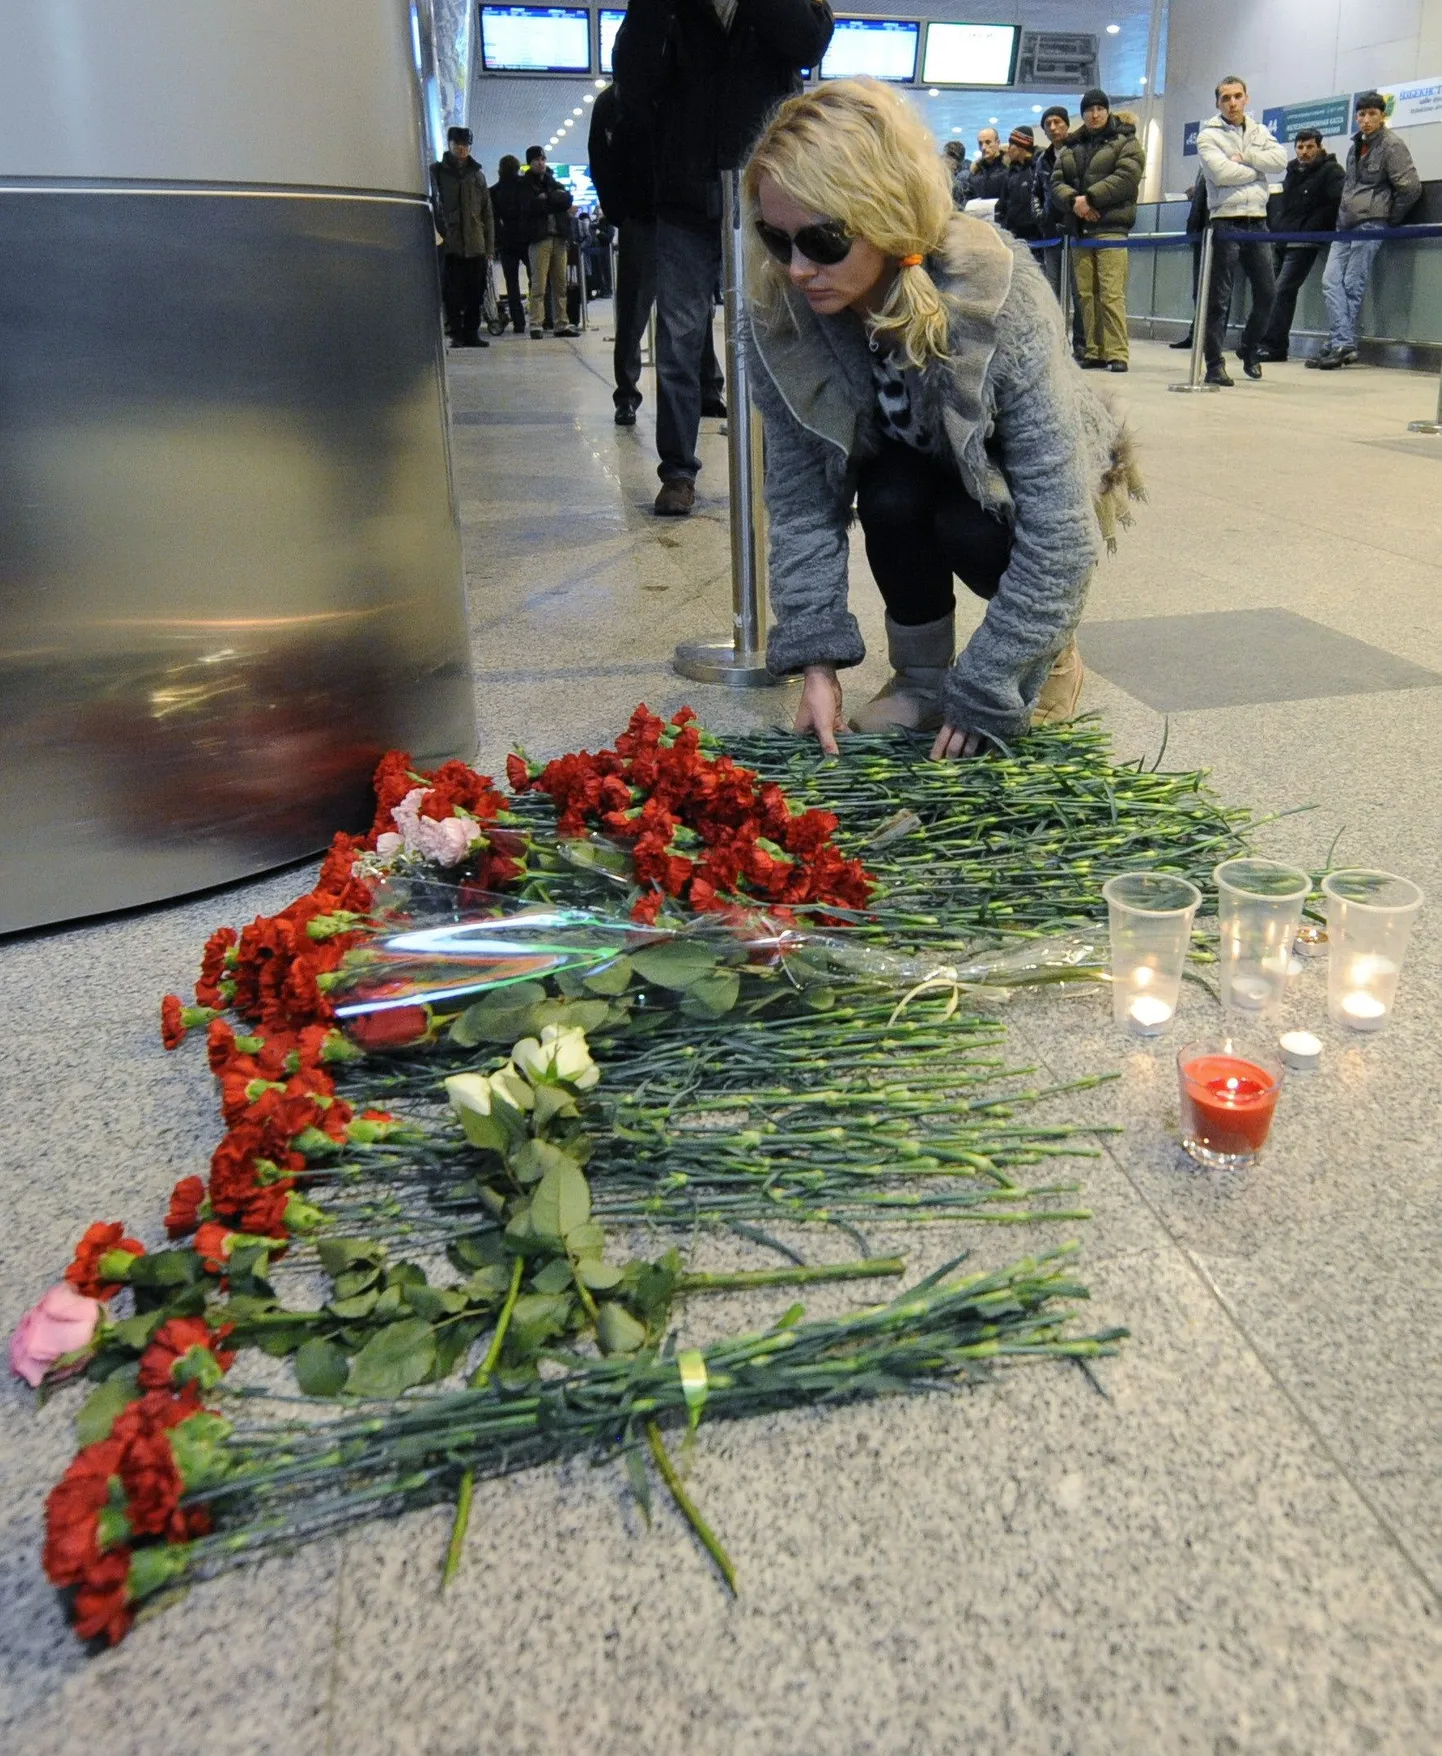 Moskvas mälestatakse täna terrorirünnaku ohvreid. Fotol naine Domodedovo lennujaamas hukkunute mälestuseks lilli asetamas